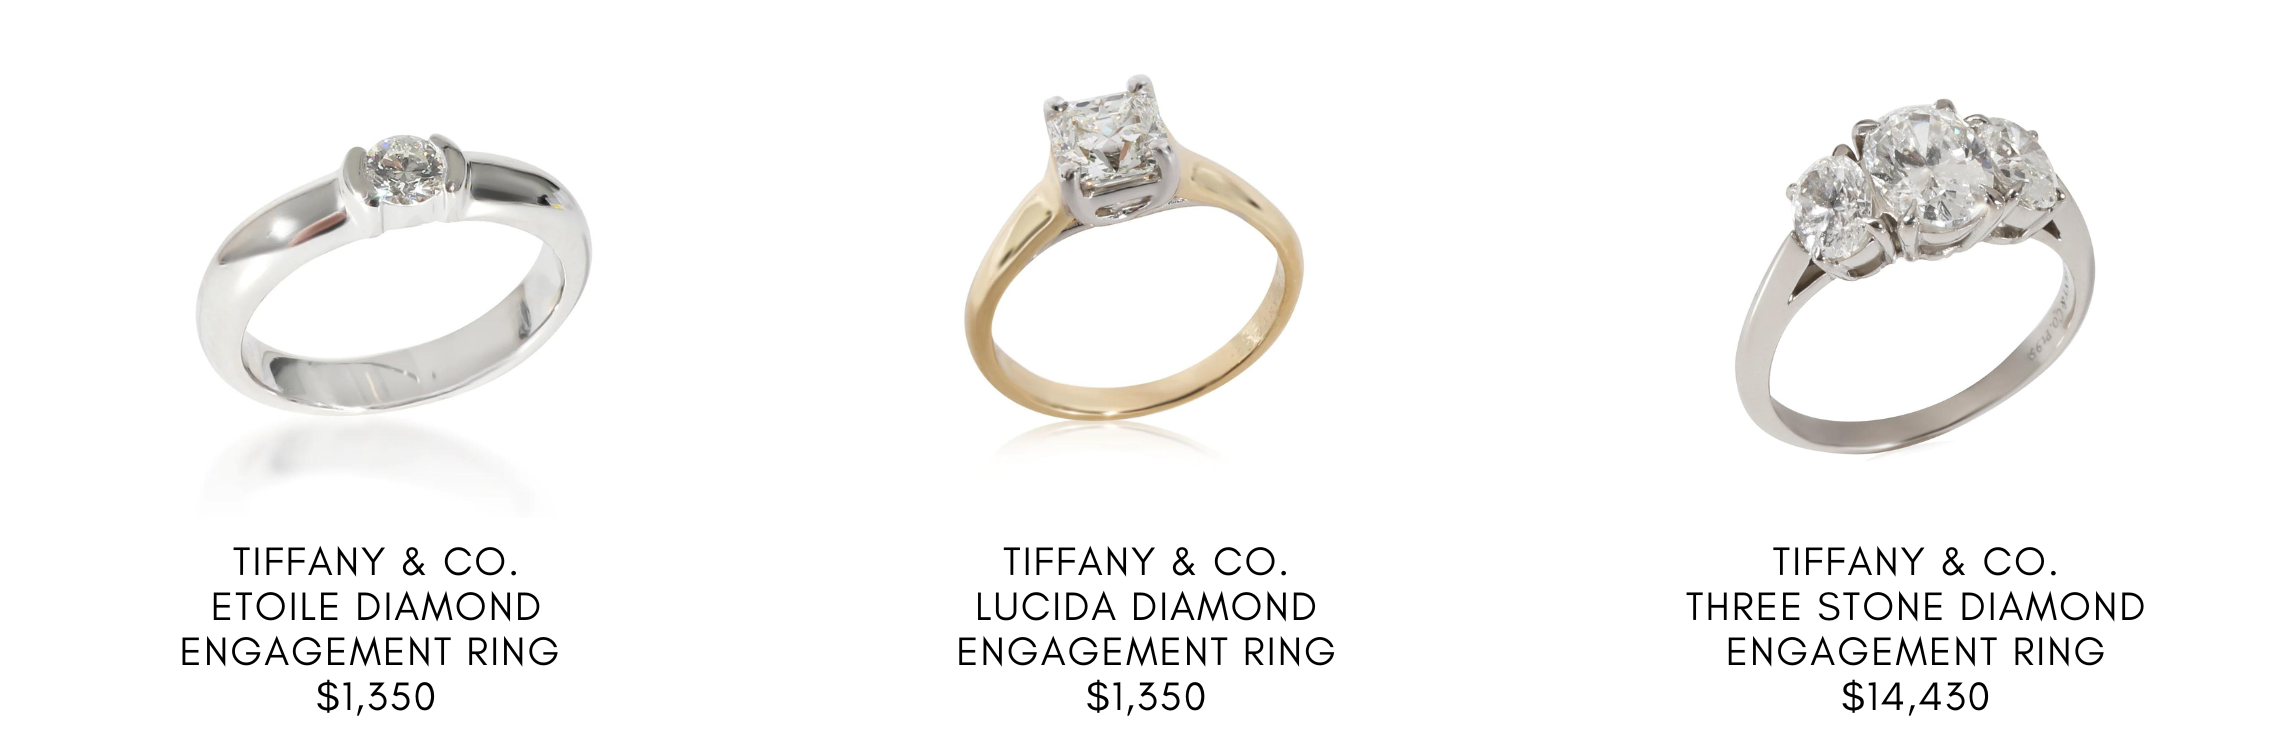 Tiffany & Company 